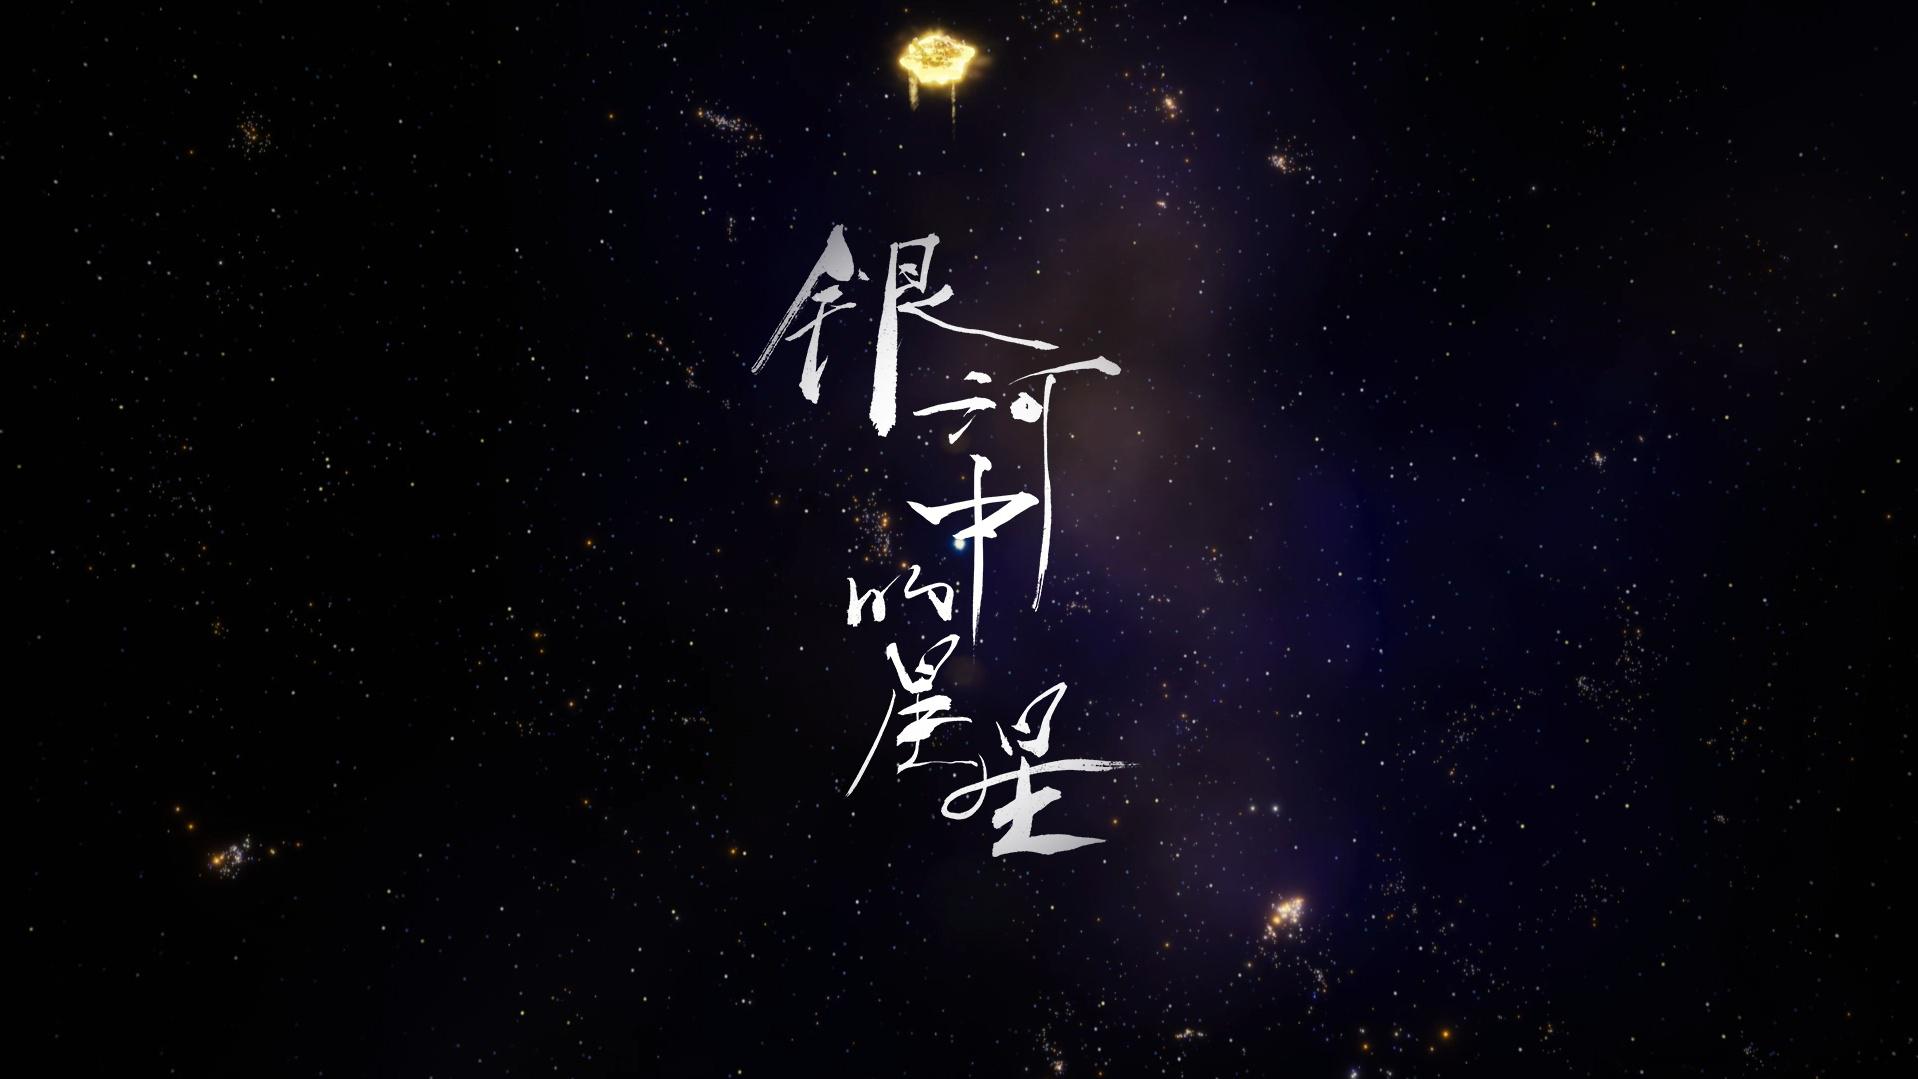 李宇春 - 银河中的星星